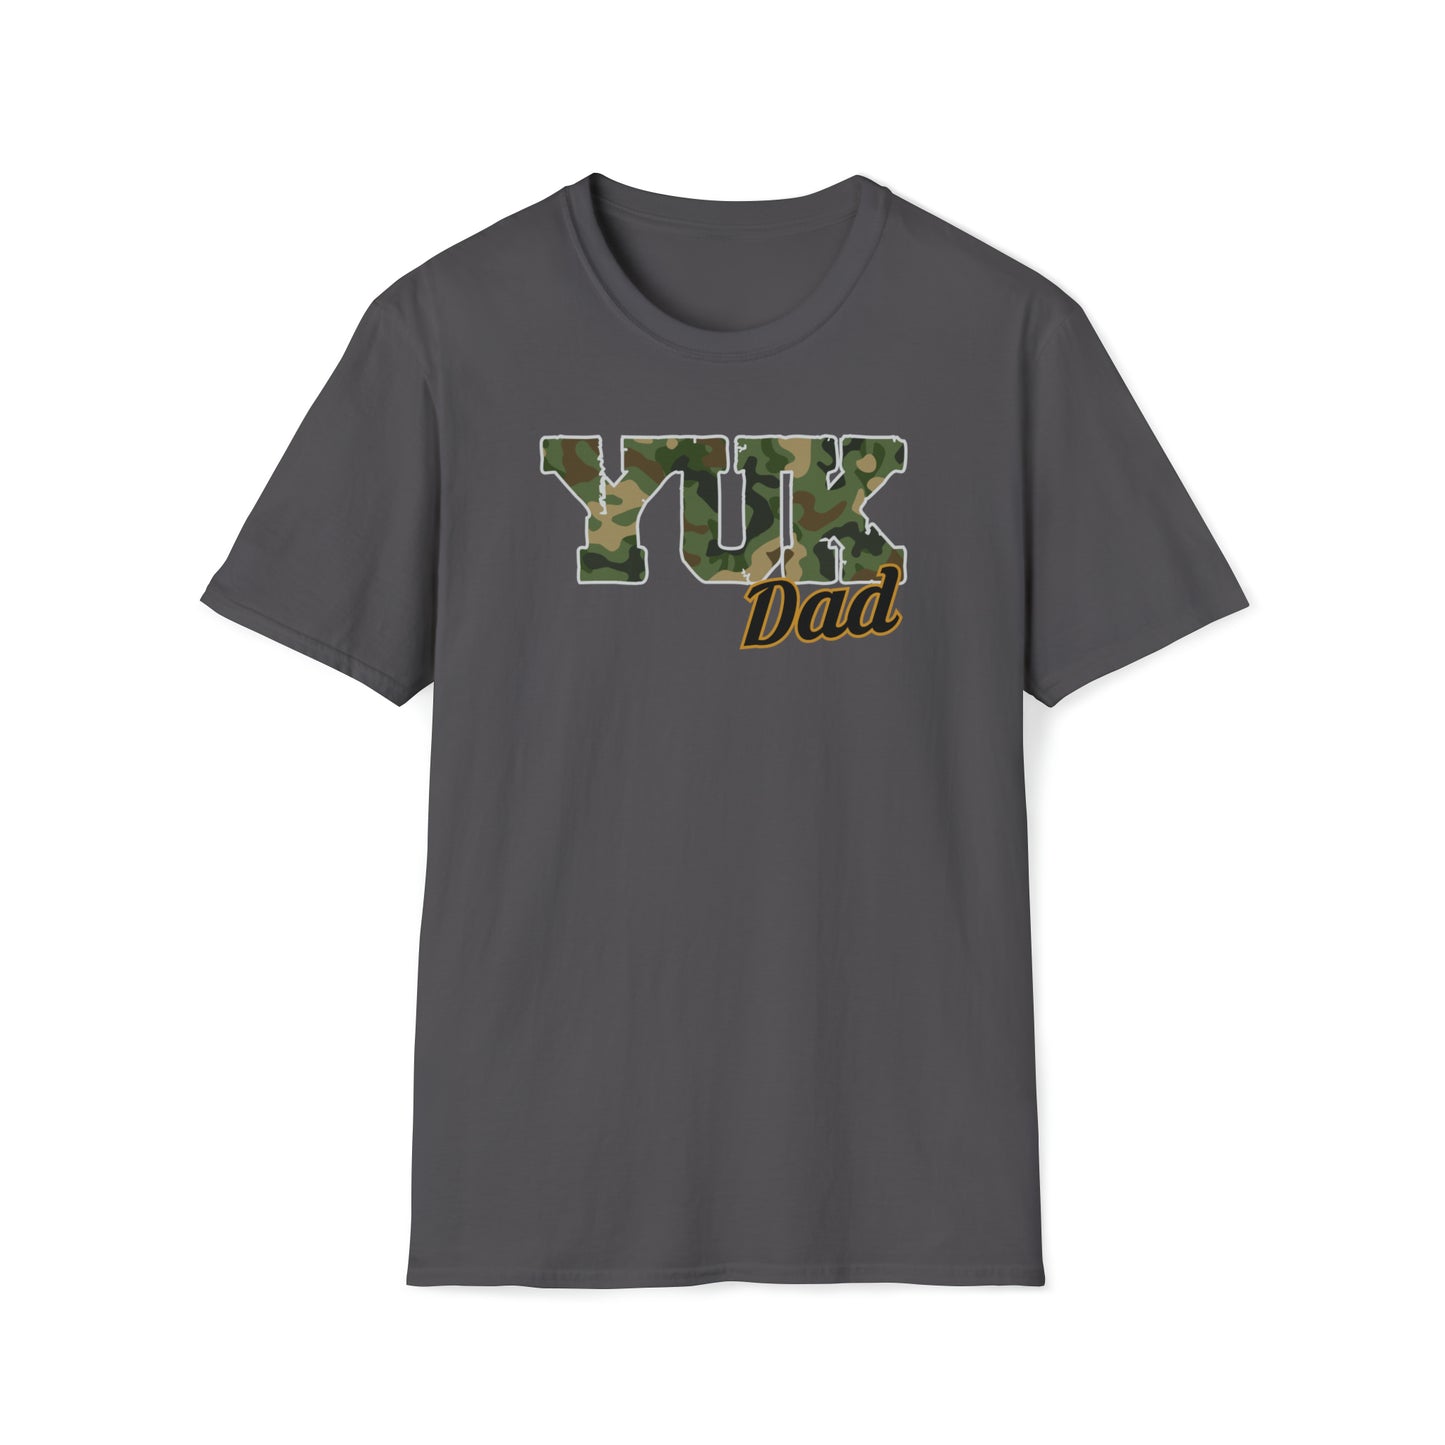 YUK DAD | Unisex Softstyle T-Shirt